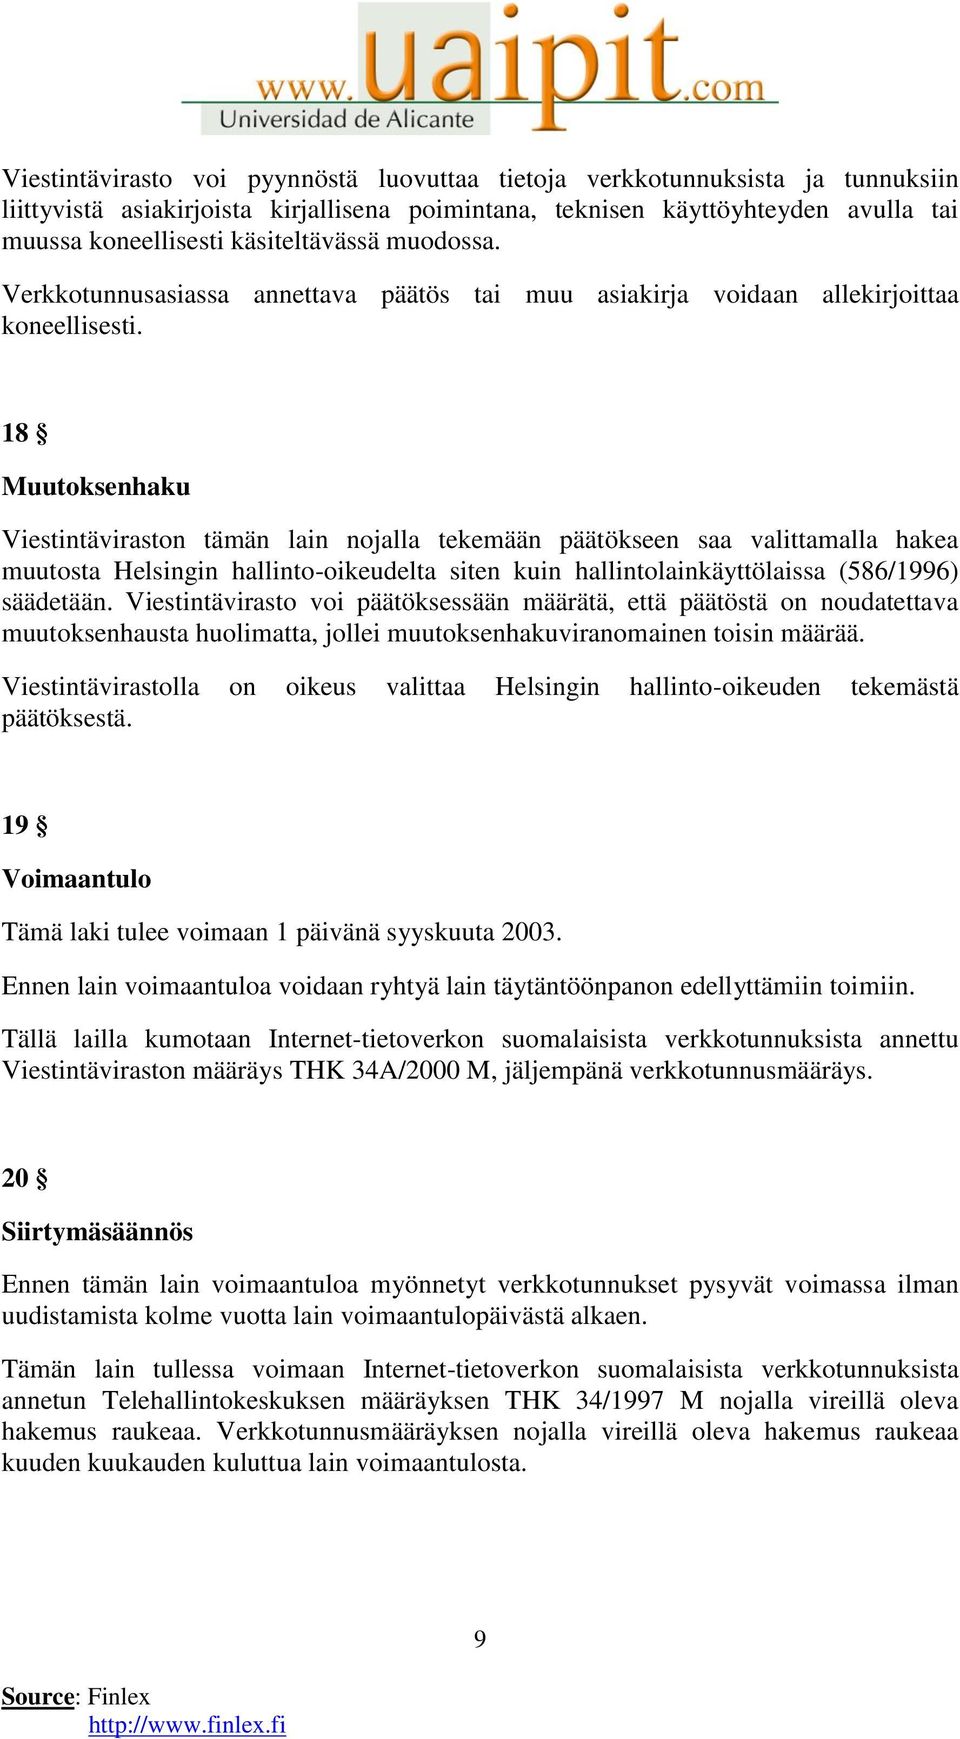 18 Muutoksenhaku Viestintäviraston tämän lain nojalla tekemään päätökseen saa valittamalla hakea muutosta Helsingin hallinto-oikeudelta siten kuin hallintolainkäyttölaissa (586/1996) säädetään.